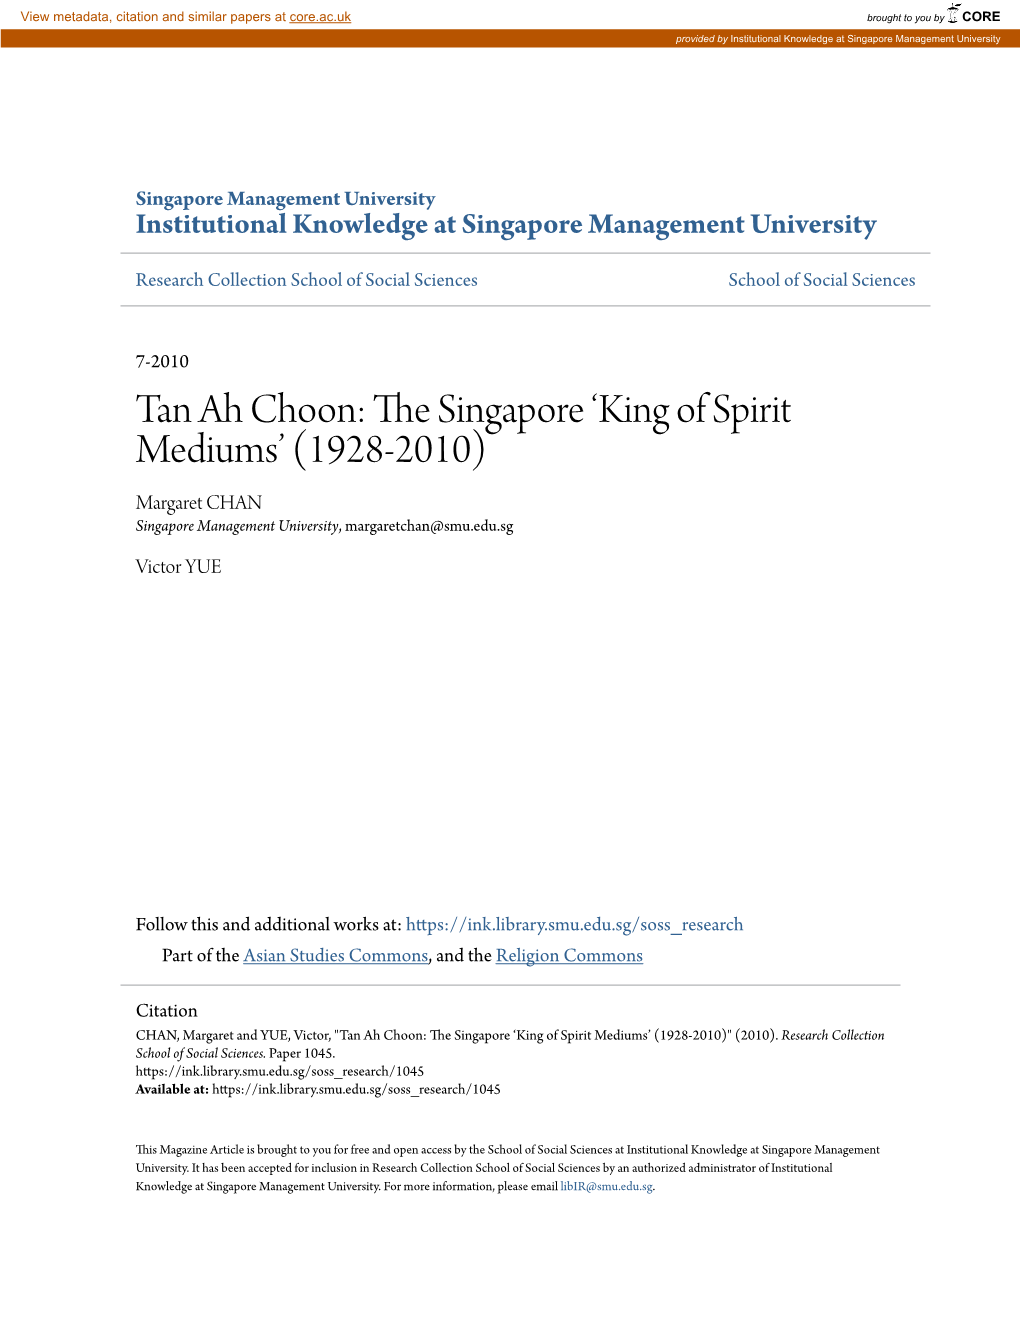 Tan Ah Choon: the Ins Gapore ‘King of Spirit Mediums’ (1928-2010) Margaret CHAN Singapore Management University, Margaretchan@Smu.Edu.Sg